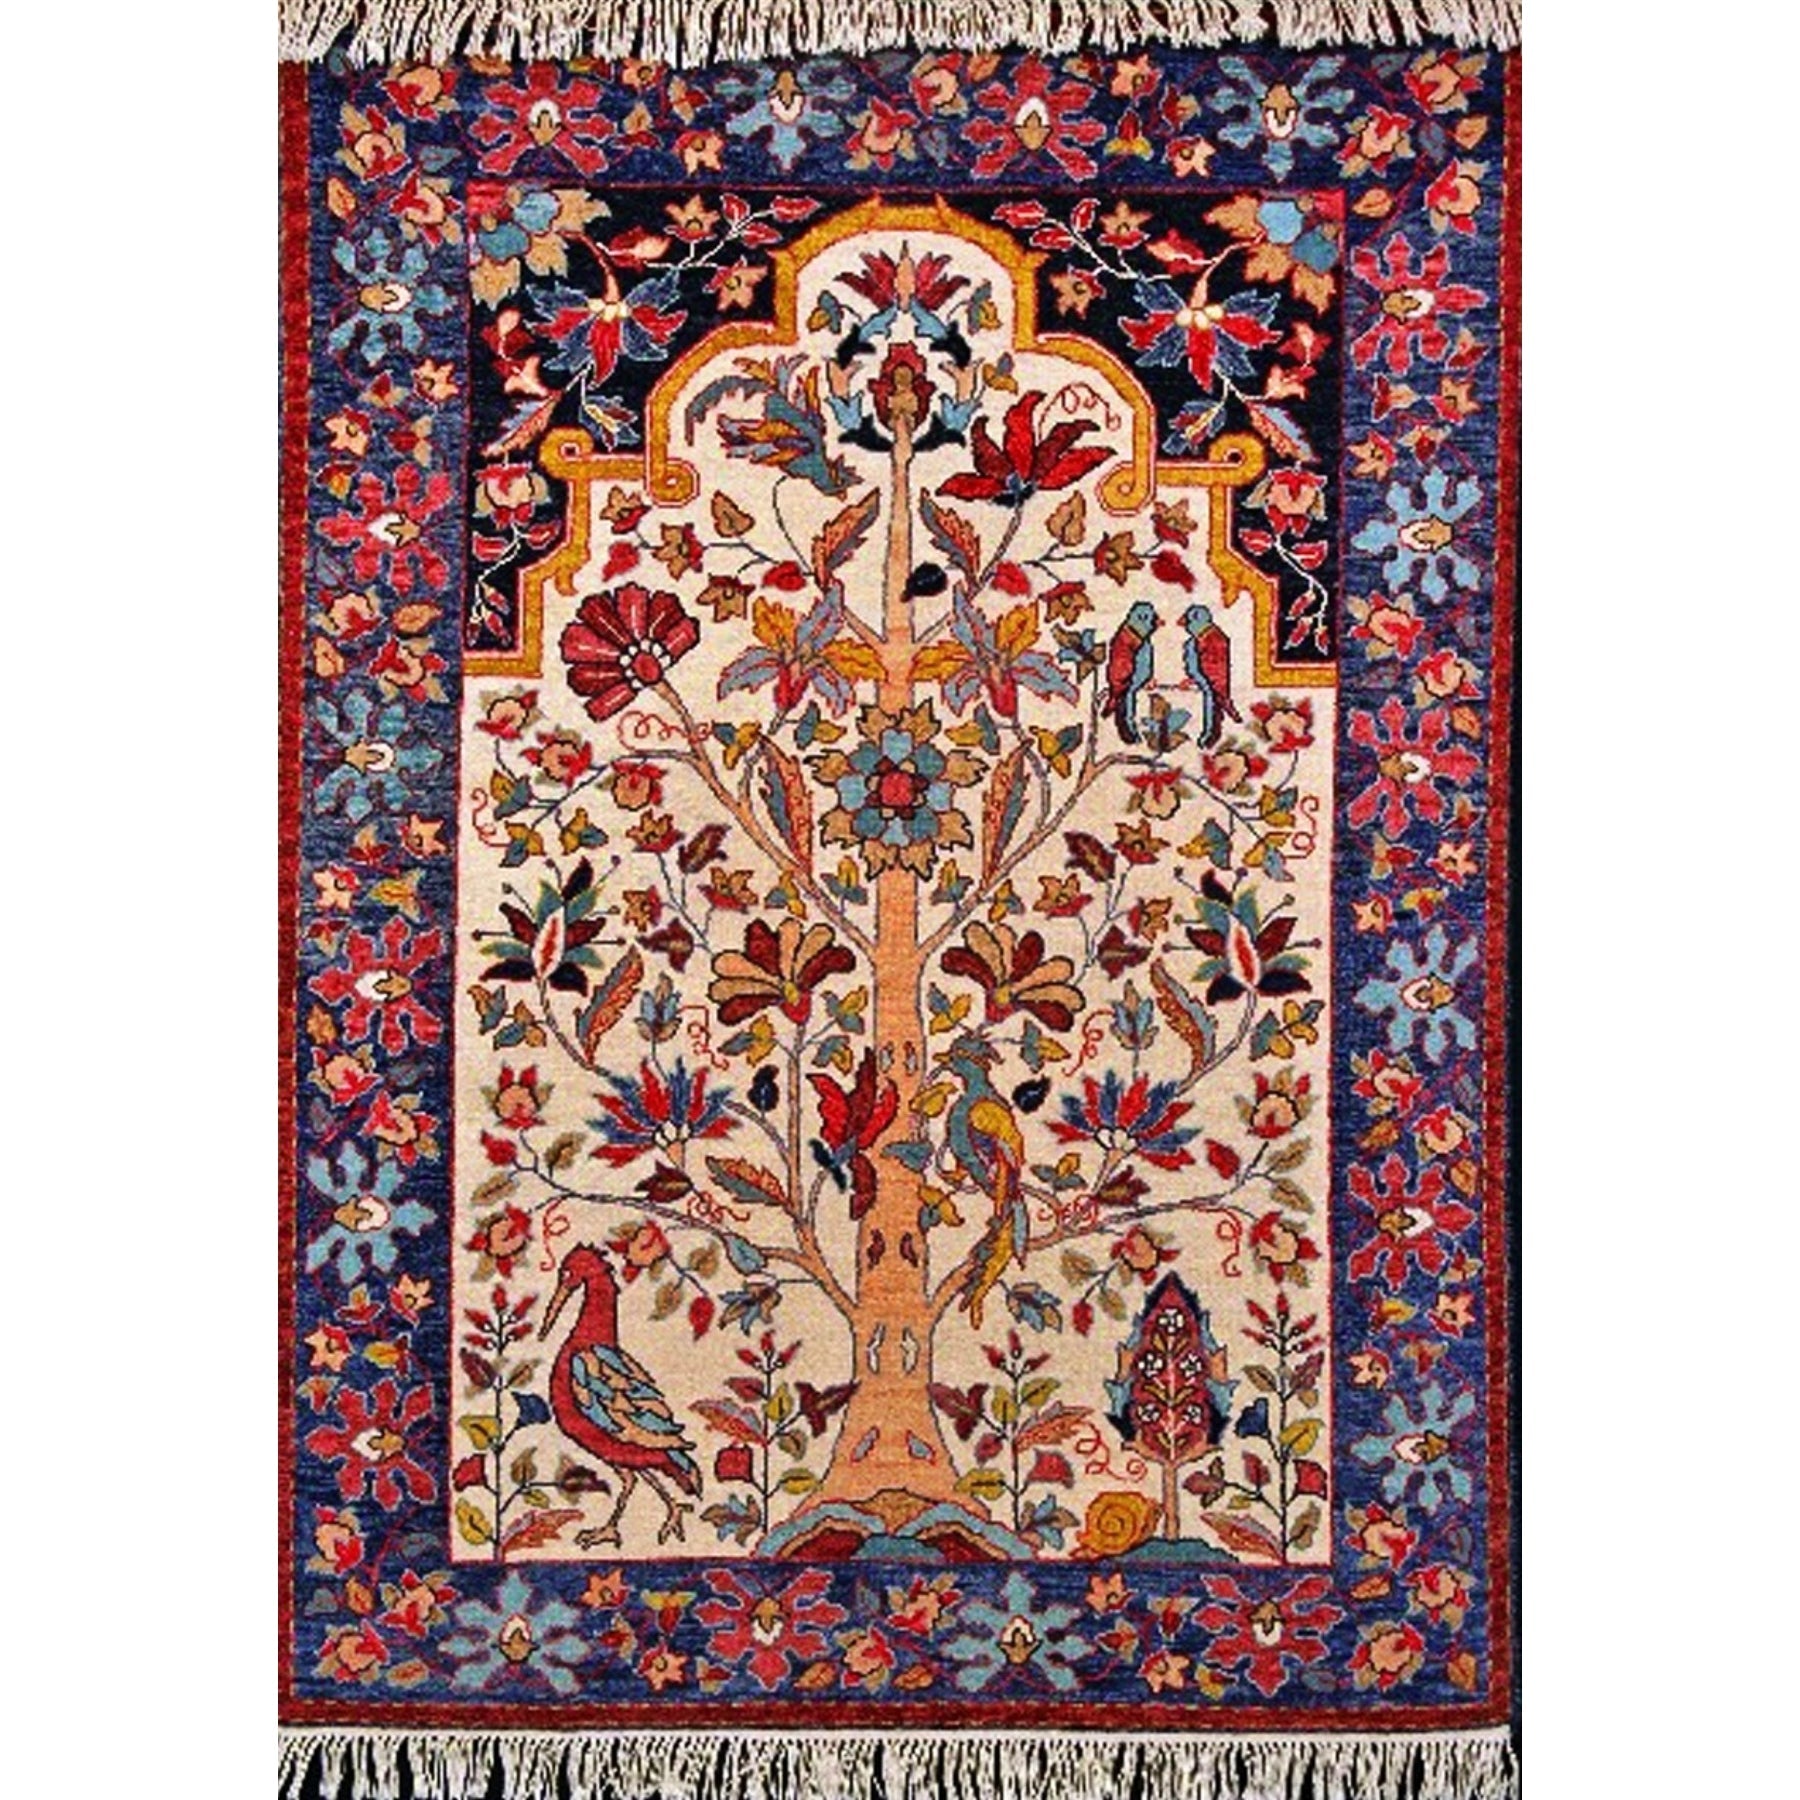 Birds Of Sarouk, rug hooked by Elizabeth Marino